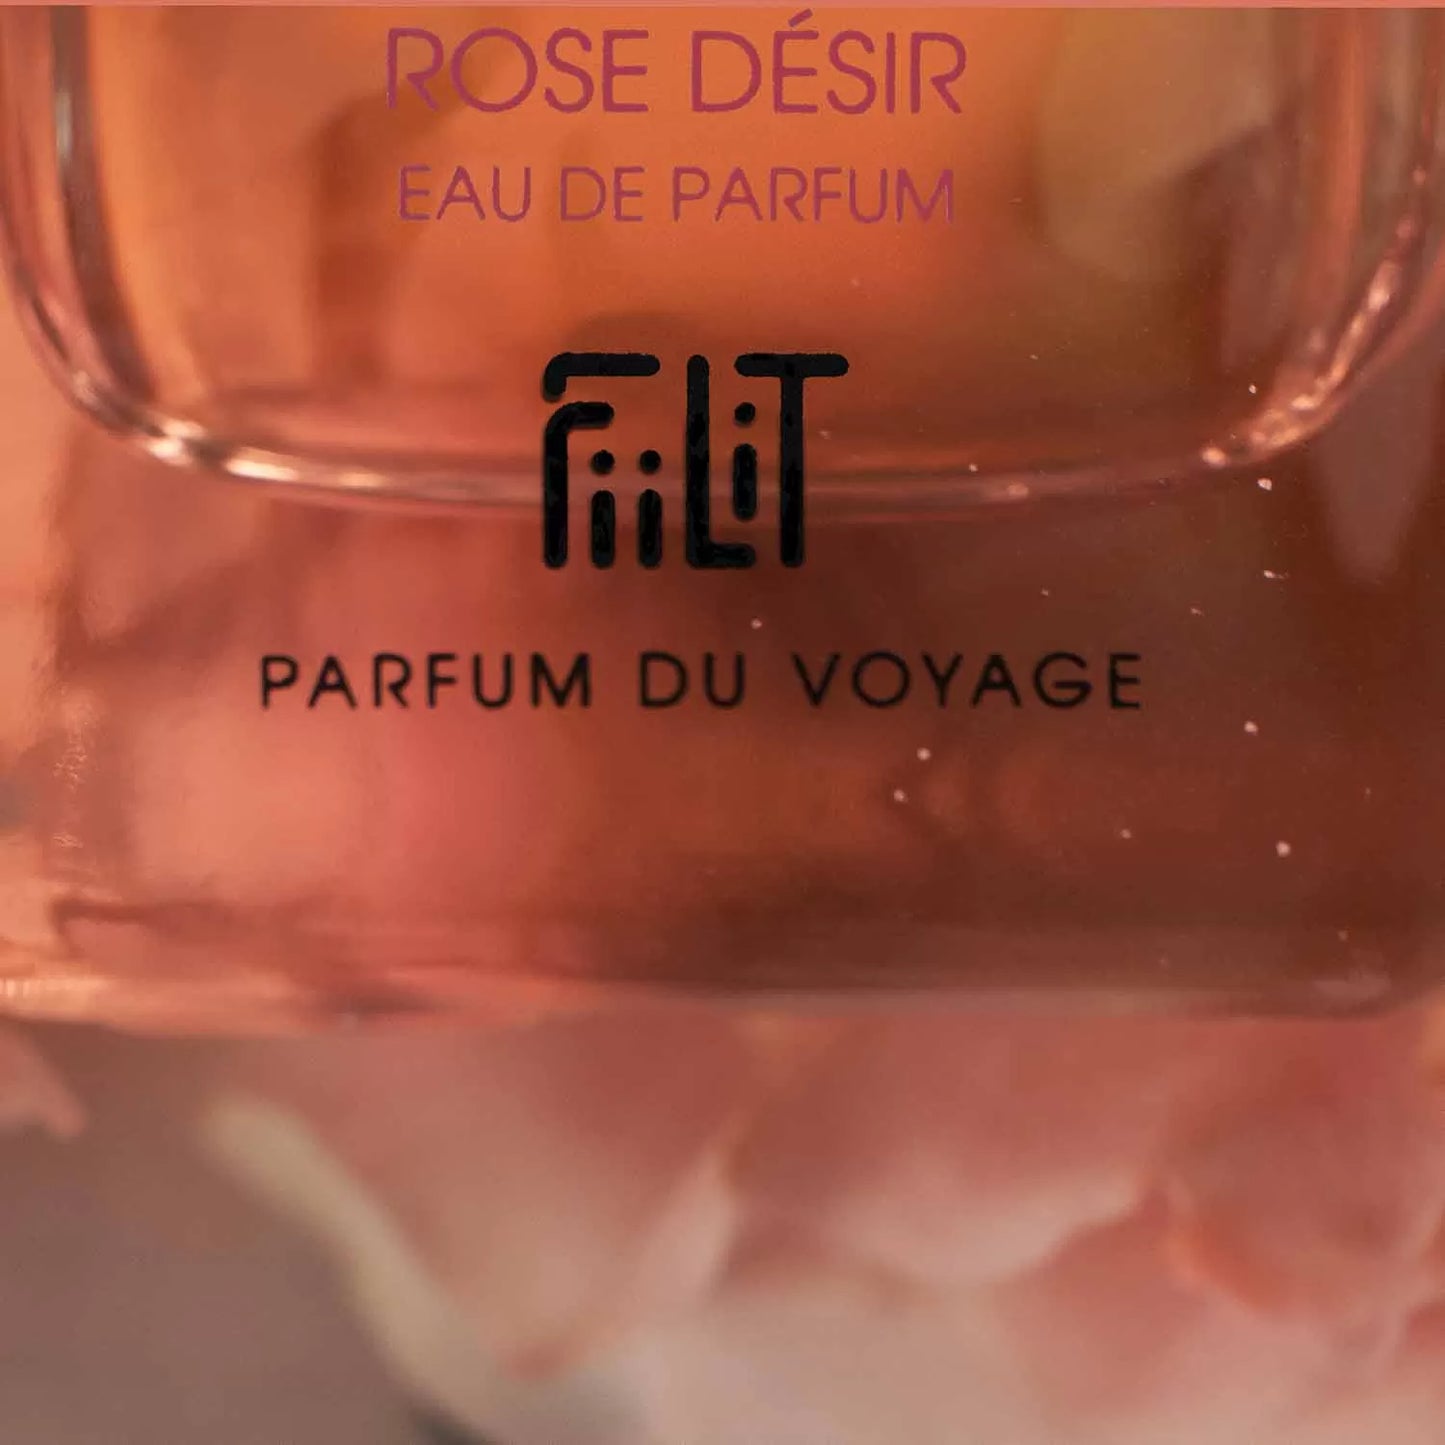 ROSE DÉSIR - DAMAS Eau de Parfum